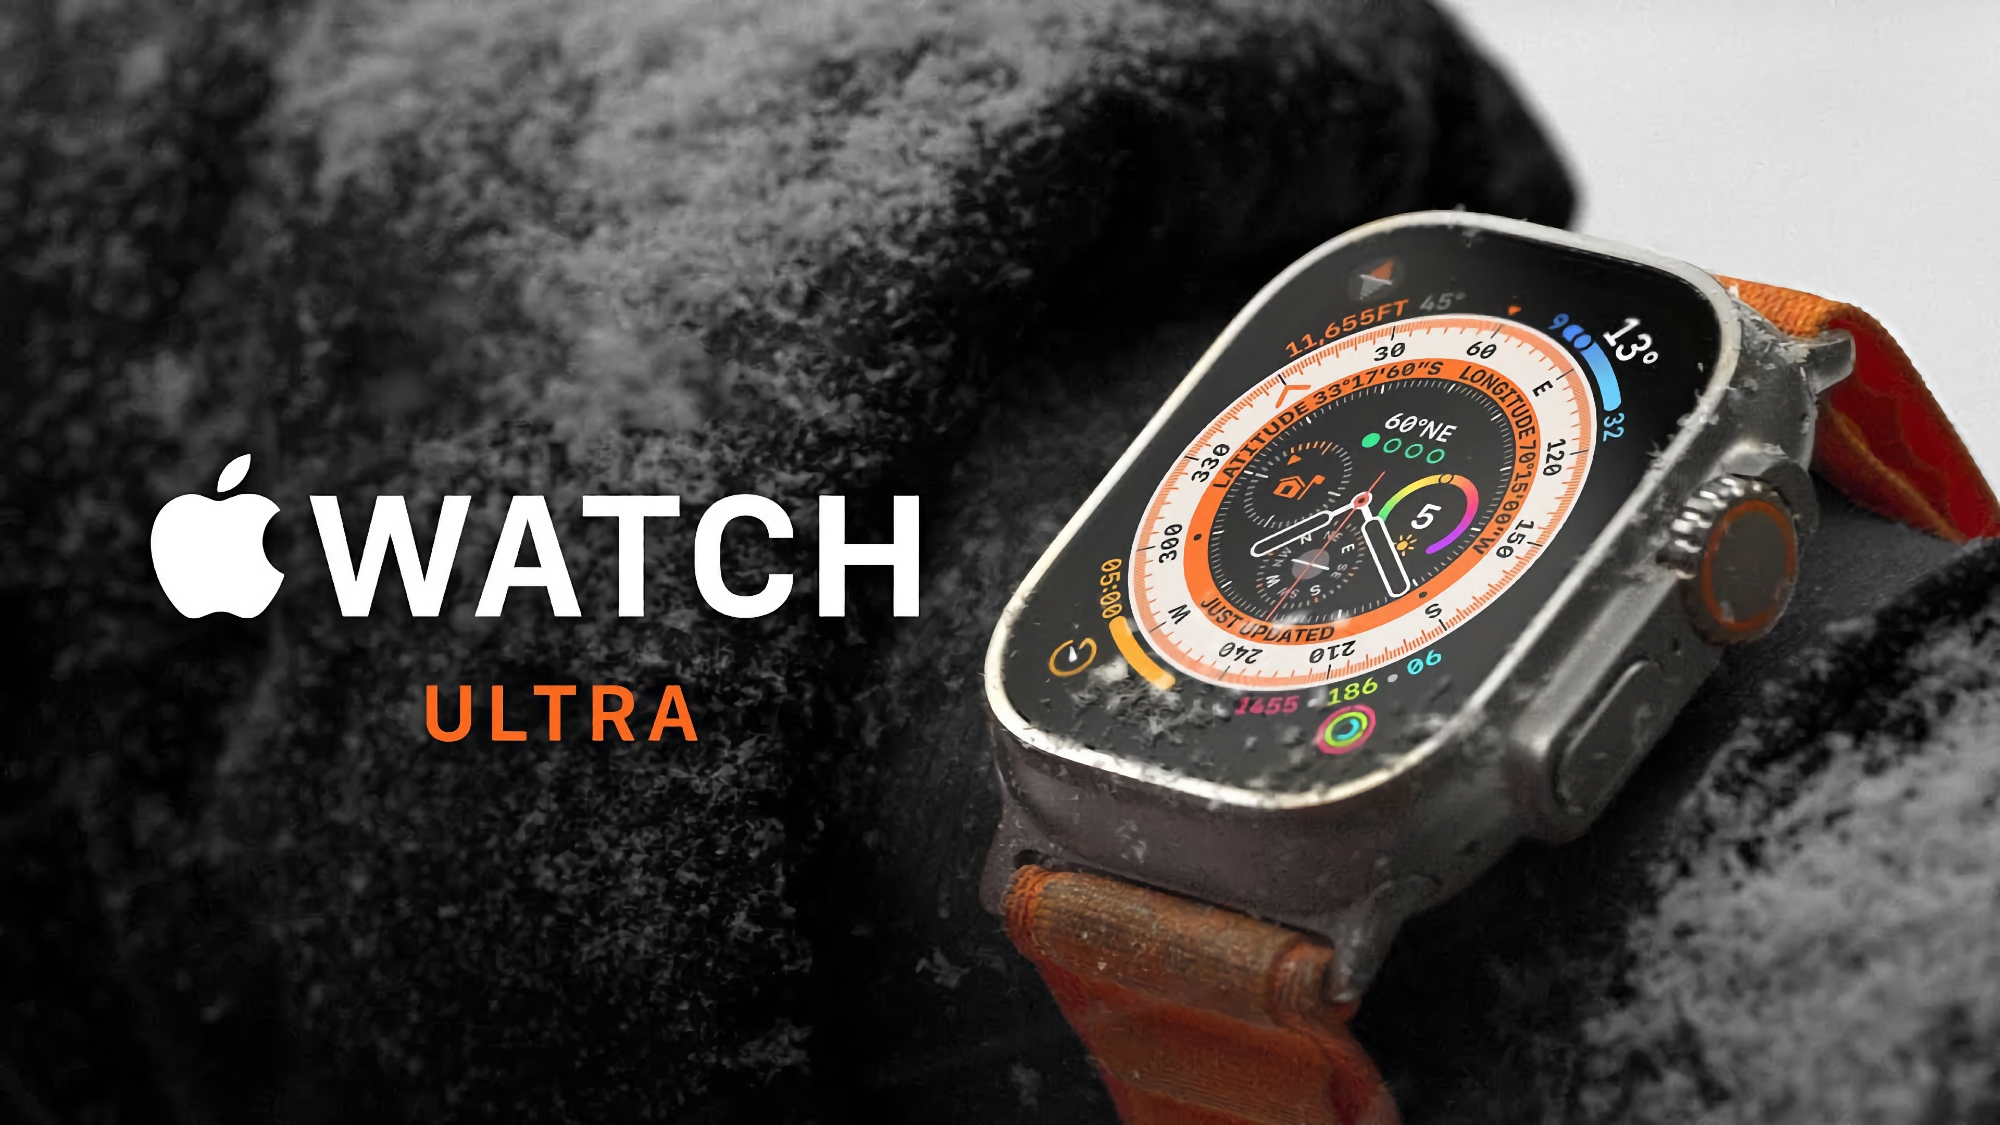 Aanbieding van de dag: Apple Watch Ultra bij Amazon voor € 120 korting